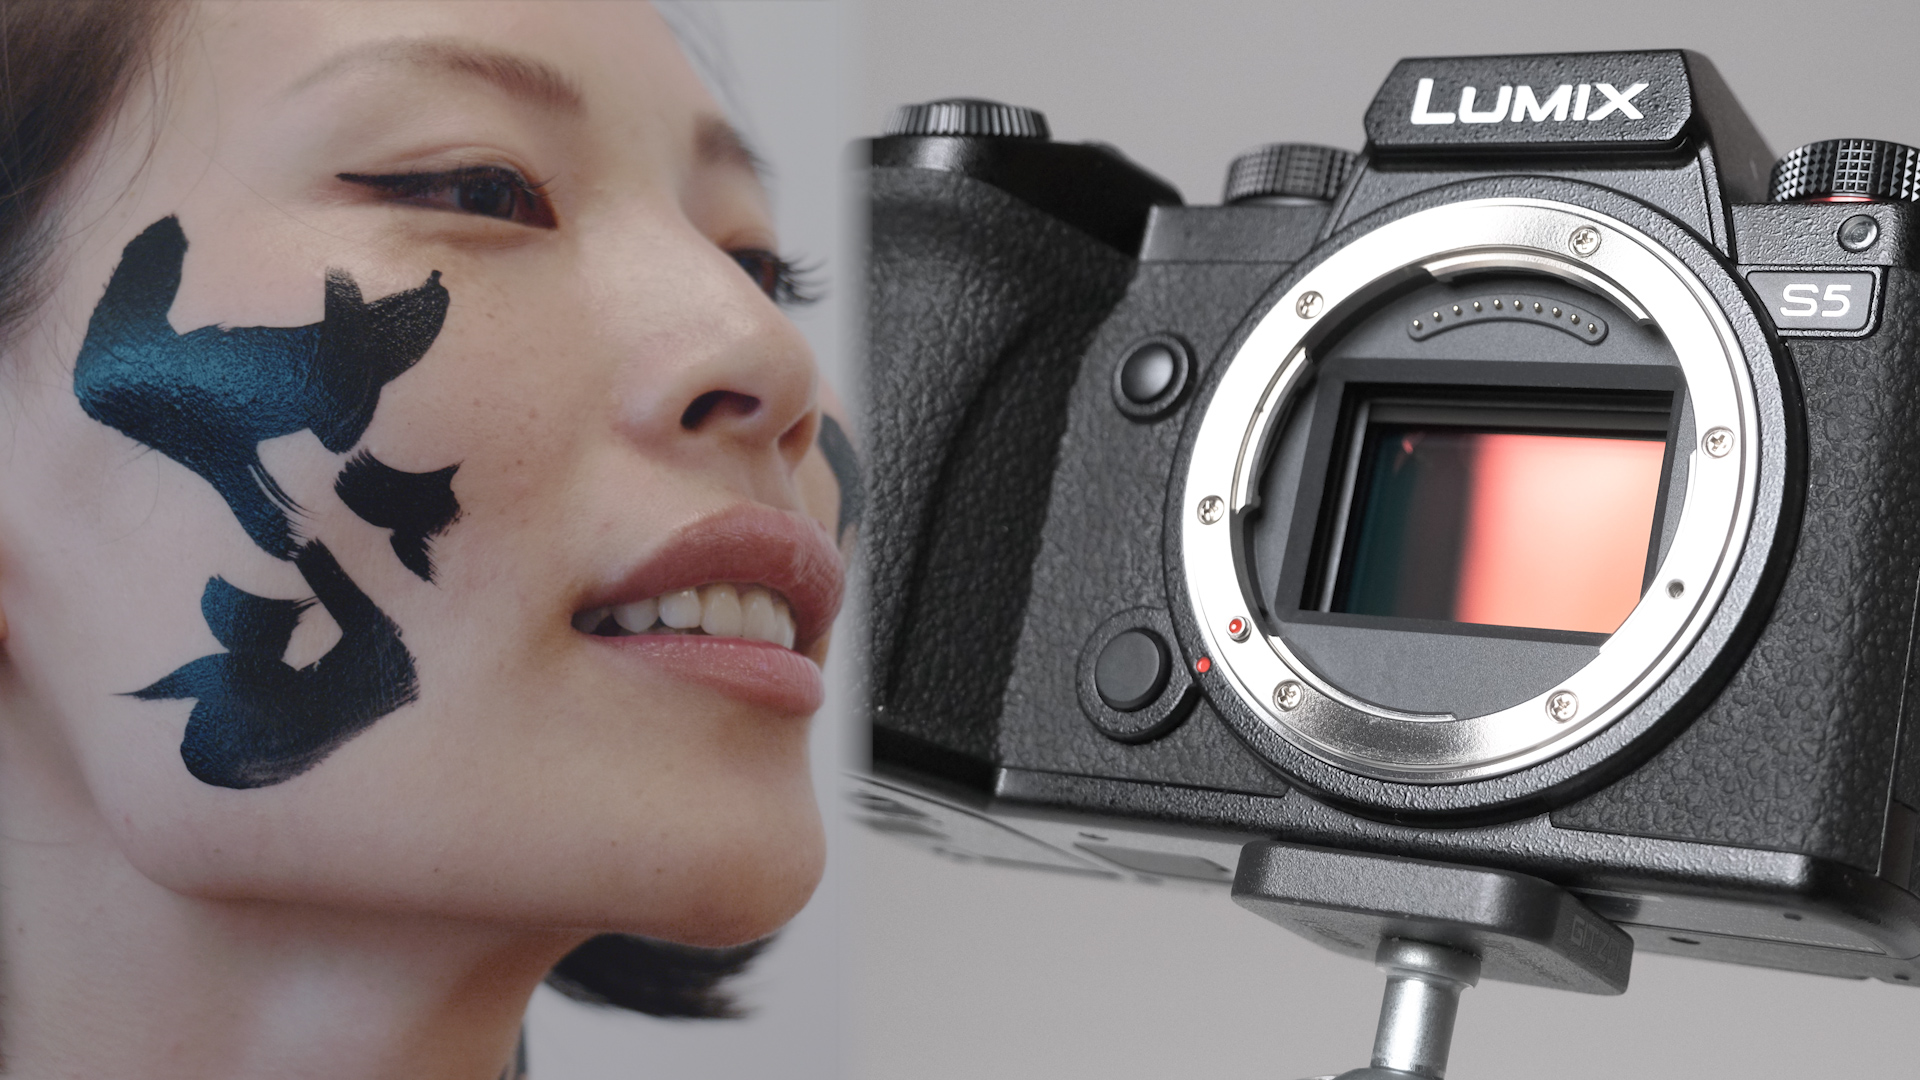 カメラ デジタルカメラ パナソニックLUMIX S5レビュー | CineD